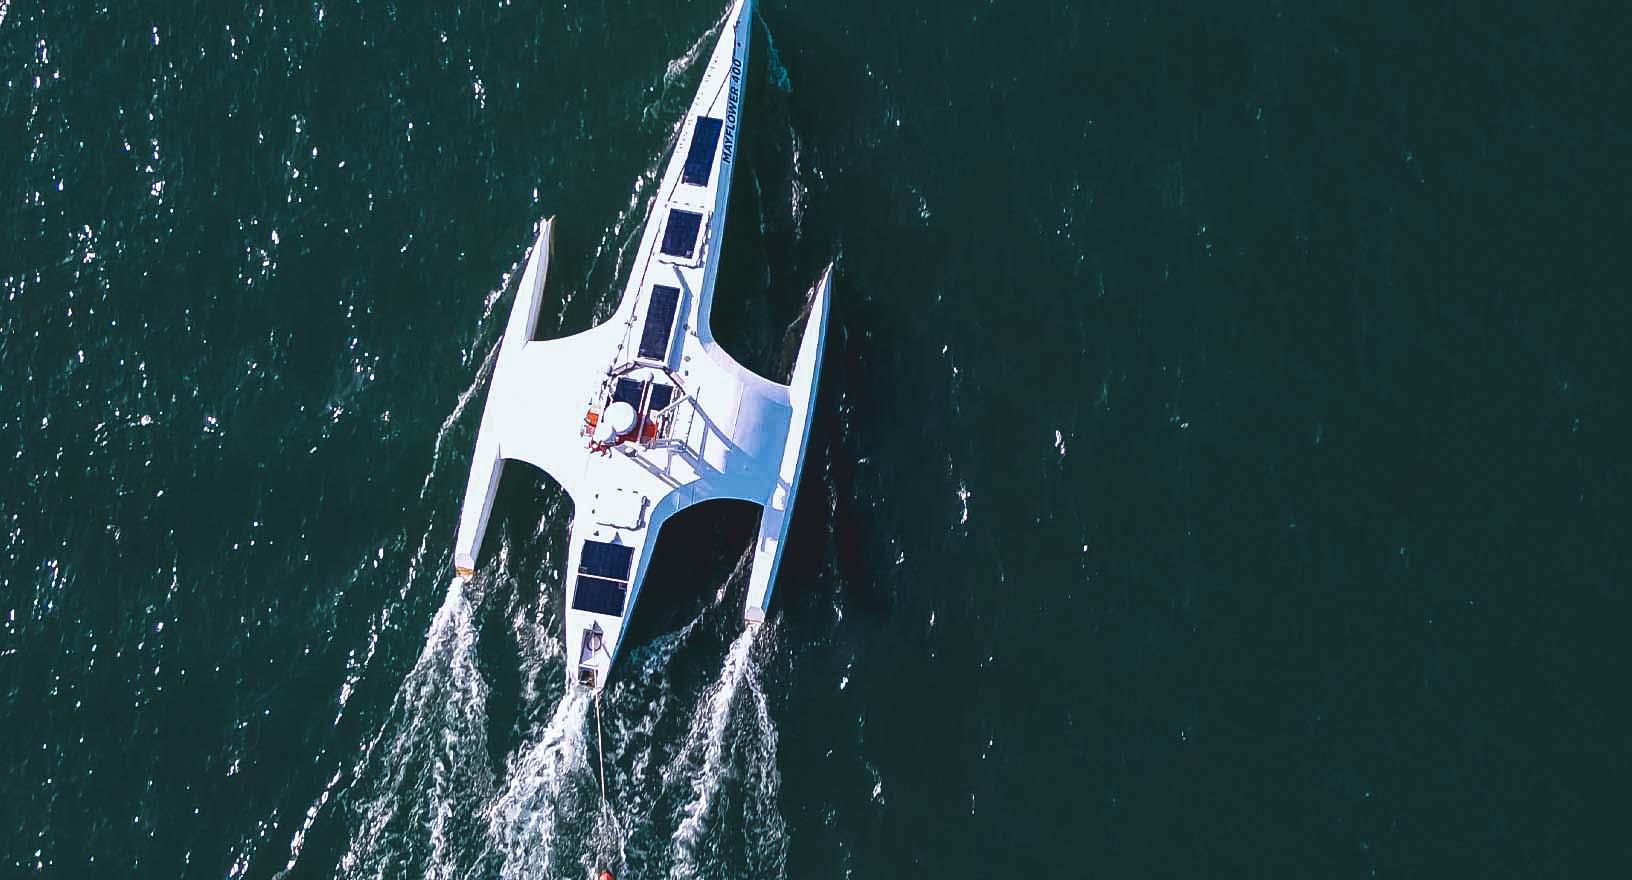 確実な自律性を可能にする技術を備え、緑色の海中を自律的に航海する自律船メイフラワー号